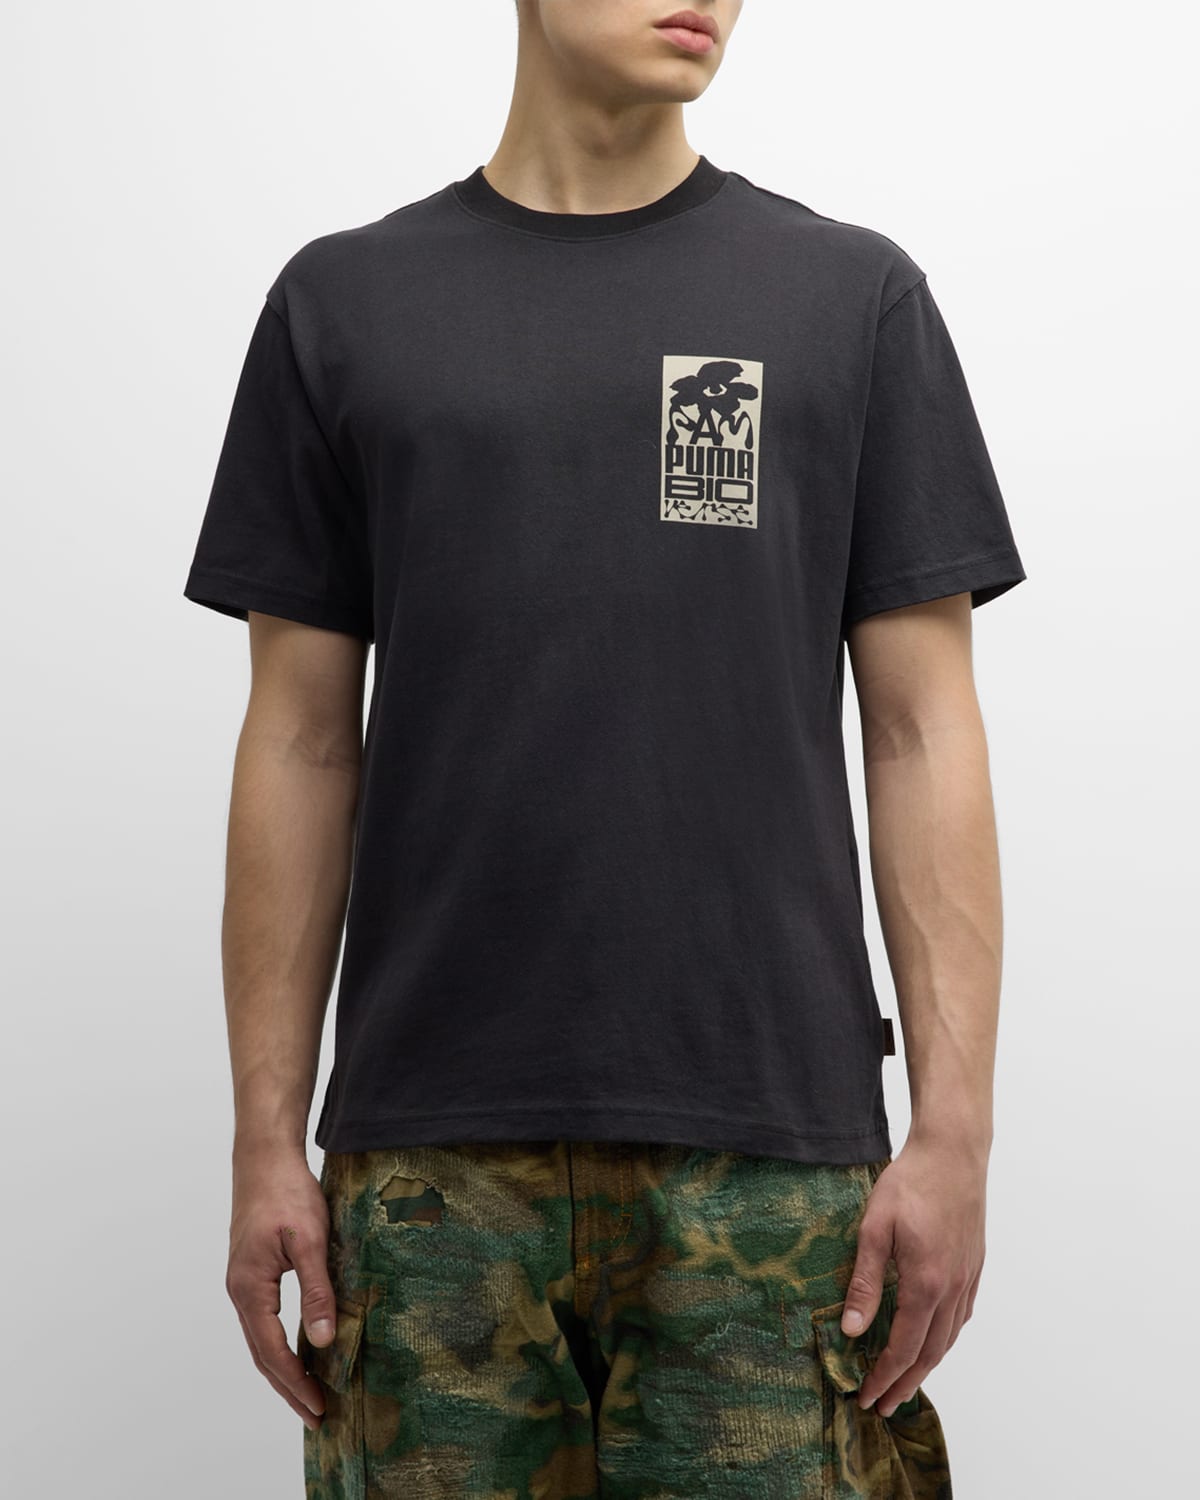 x P. A.M. Men's Graphic T-Shirt